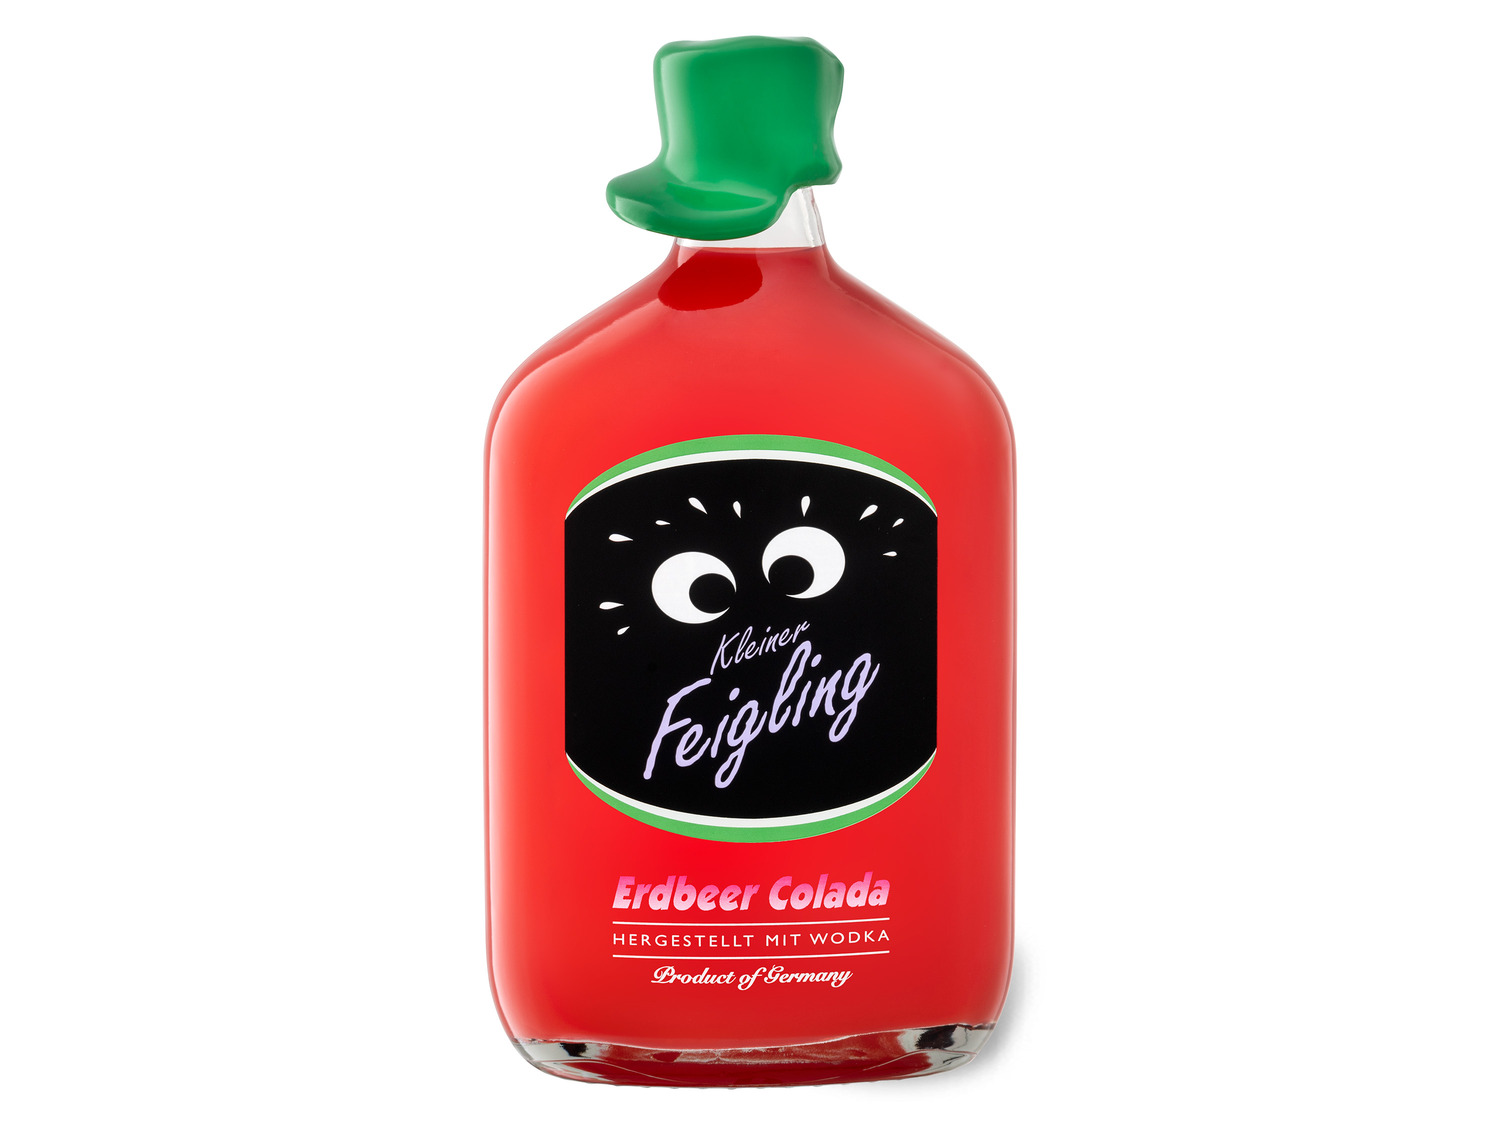 | LIDL Erdbeer Vol 15% Kleiner Colada Feigling